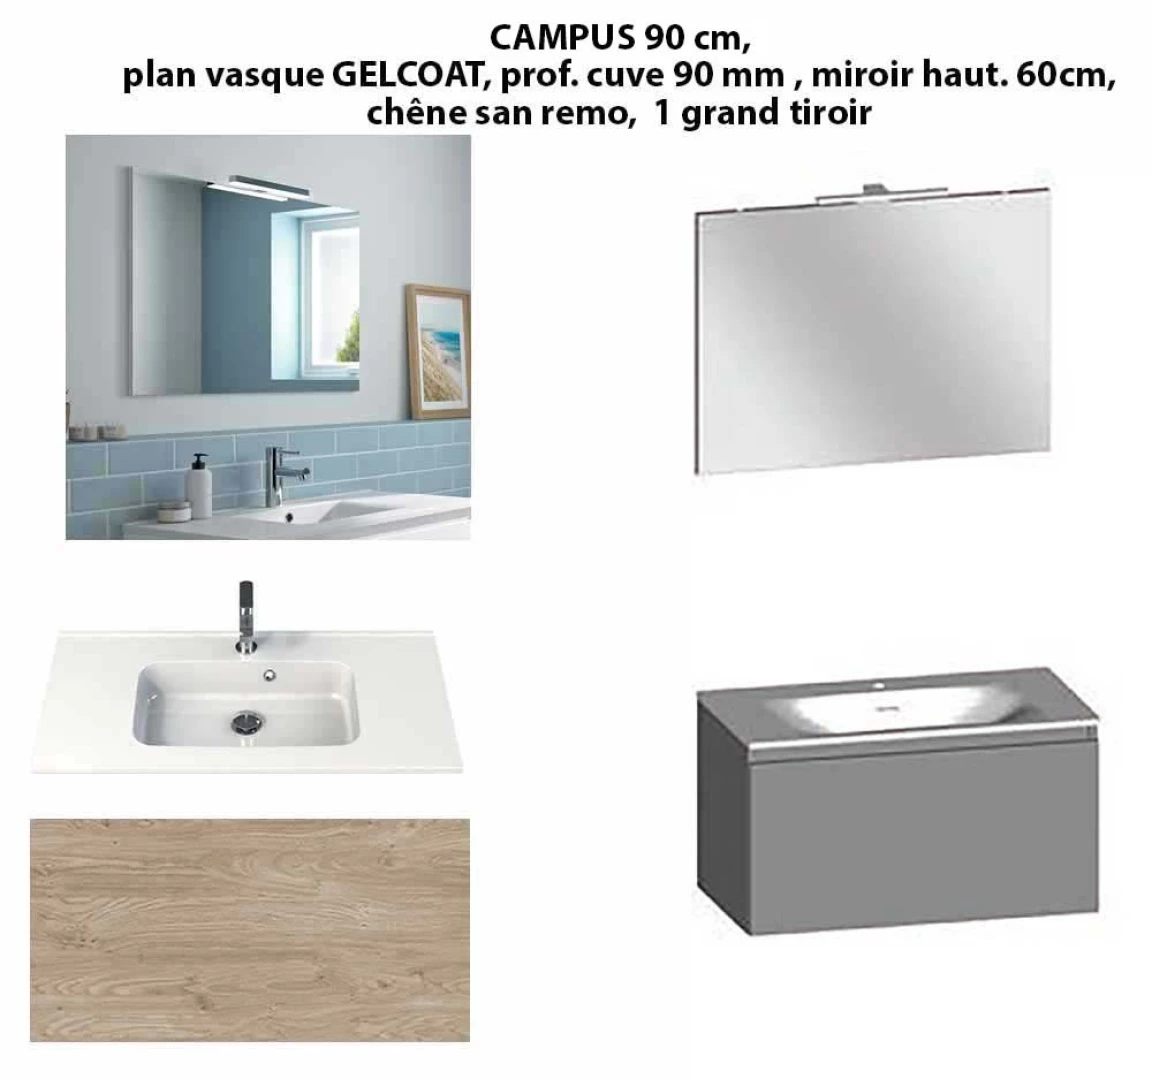 Ensemble meuble de salle de bain CAMPUS 90 cm, plan vasque GELCOAT, prof. cuve 90 mm, miroir hauteur 60 cm, chêne san remo, 1 grand tiroir